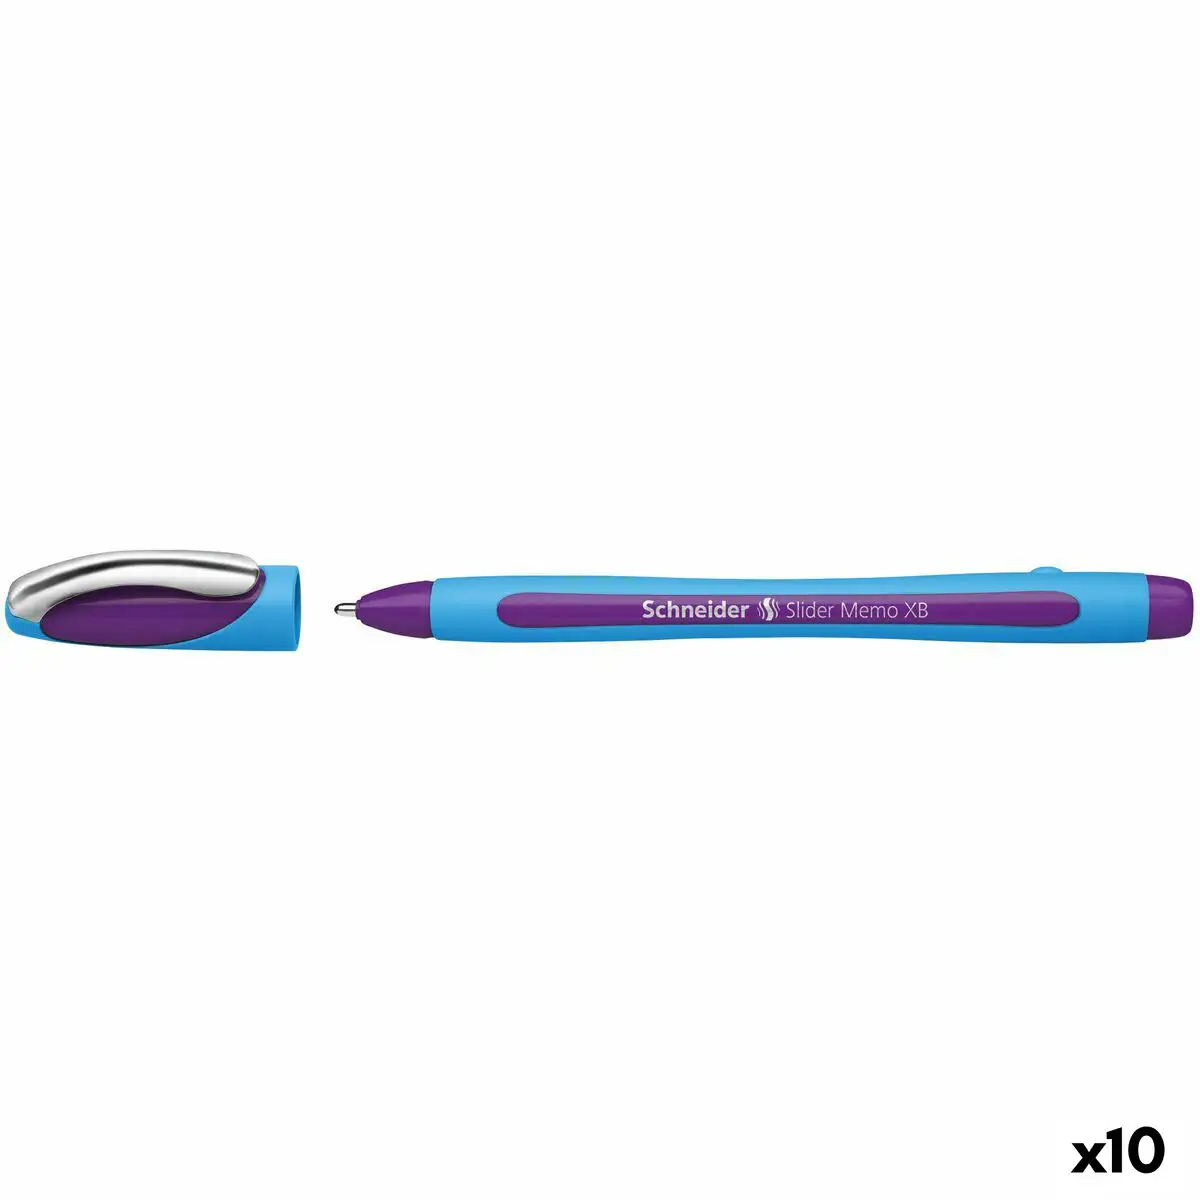 Crayon schneider slider memo xb violet caoutchouc 10 unites_2001. Entrez dans le Monde de DIAYTAR SENEGAL - Où la Satisfaction est la Priorité. Explorez notre sélection pensée pour vous offrir une expérience de shopping qui va au-delà de vos attentes.